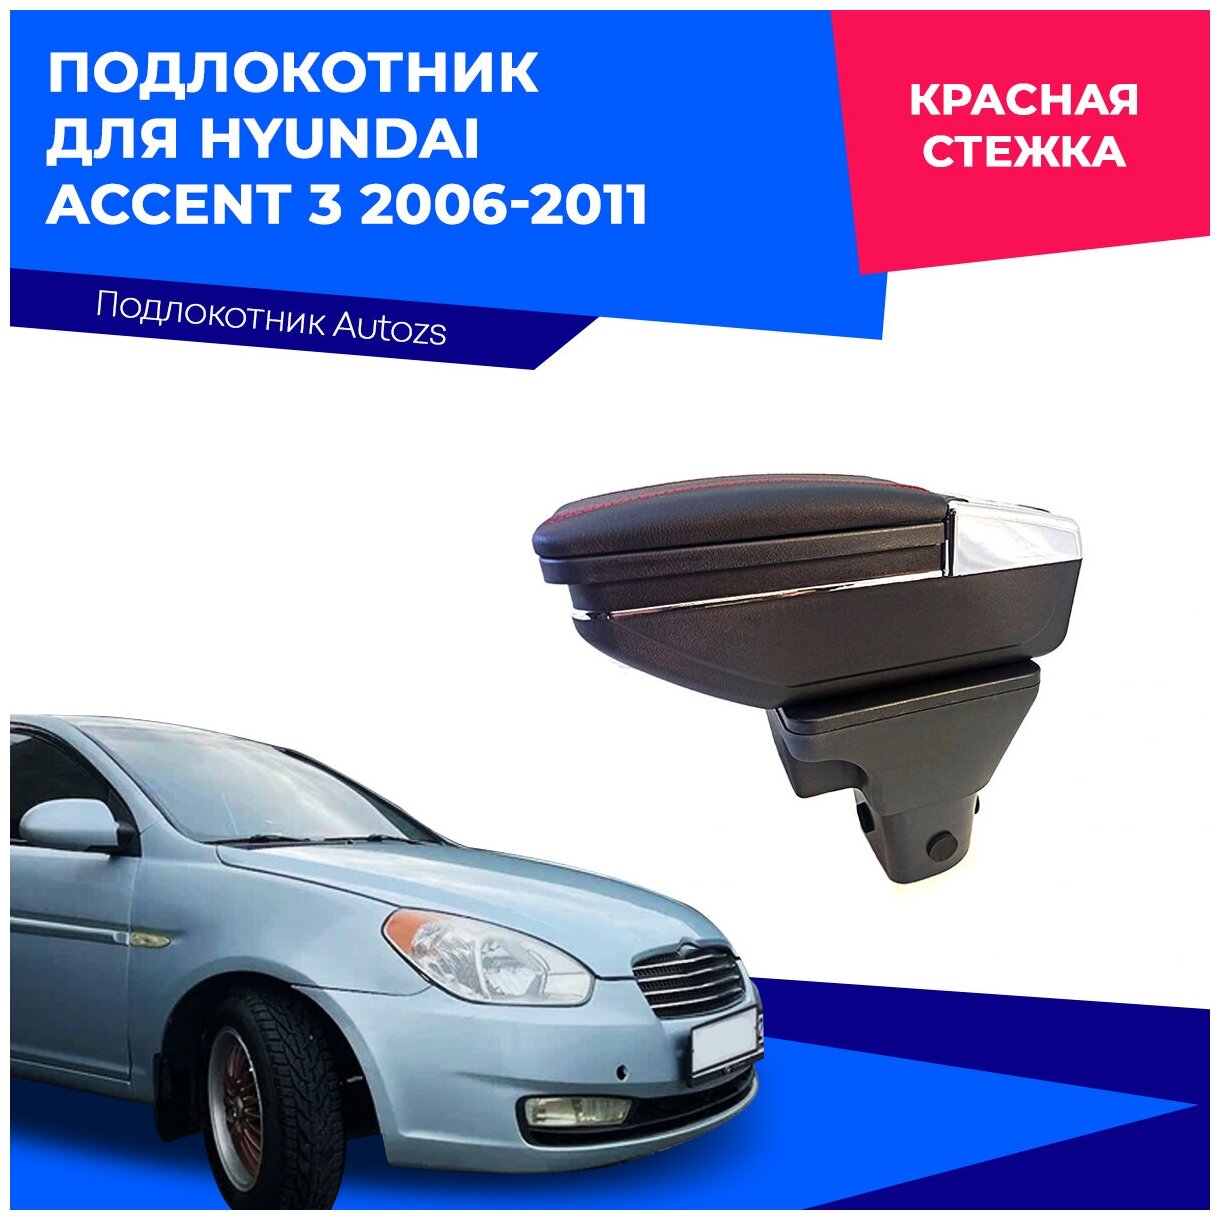 Подлокотник для Hyundai Accent 3 2006-2011 / Хендай Акцент 3 2006-2011 в штатное место